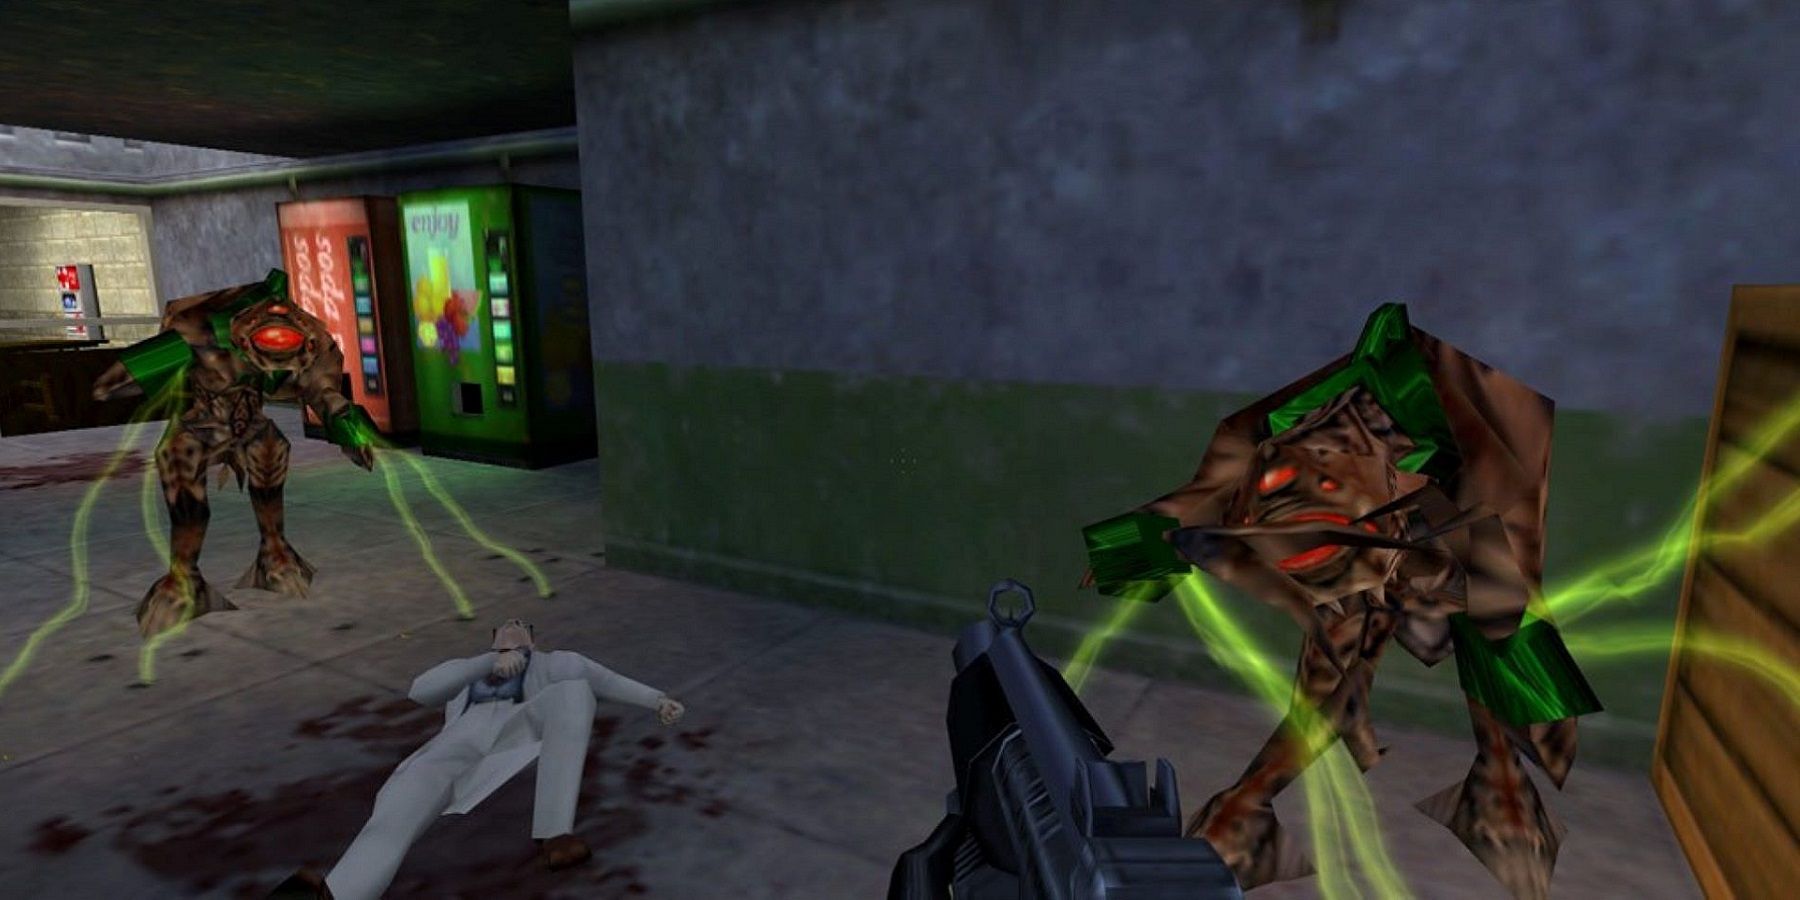 Скриншот из Half-Life, показывающий пару вортигонтов, собирающихся атаковать игрока.